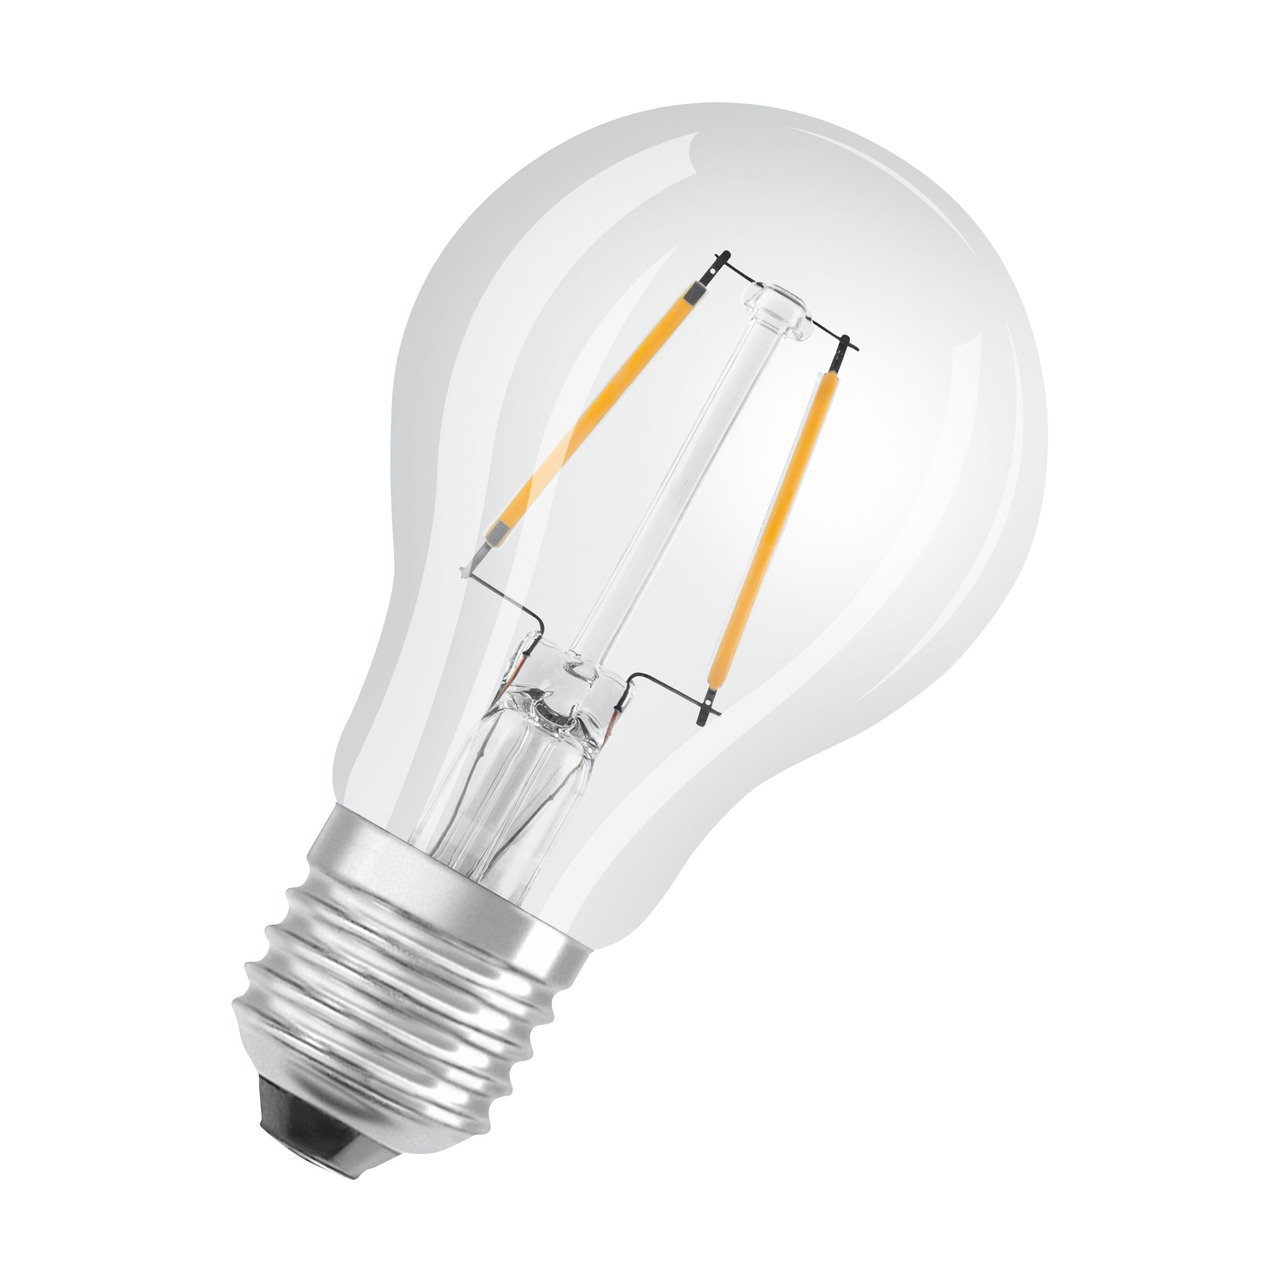 OSRAM 2-2-W-LED-Lampe A60- E27- 250 lm- warmweiss- klar- dimmbar unter Beleuchtung